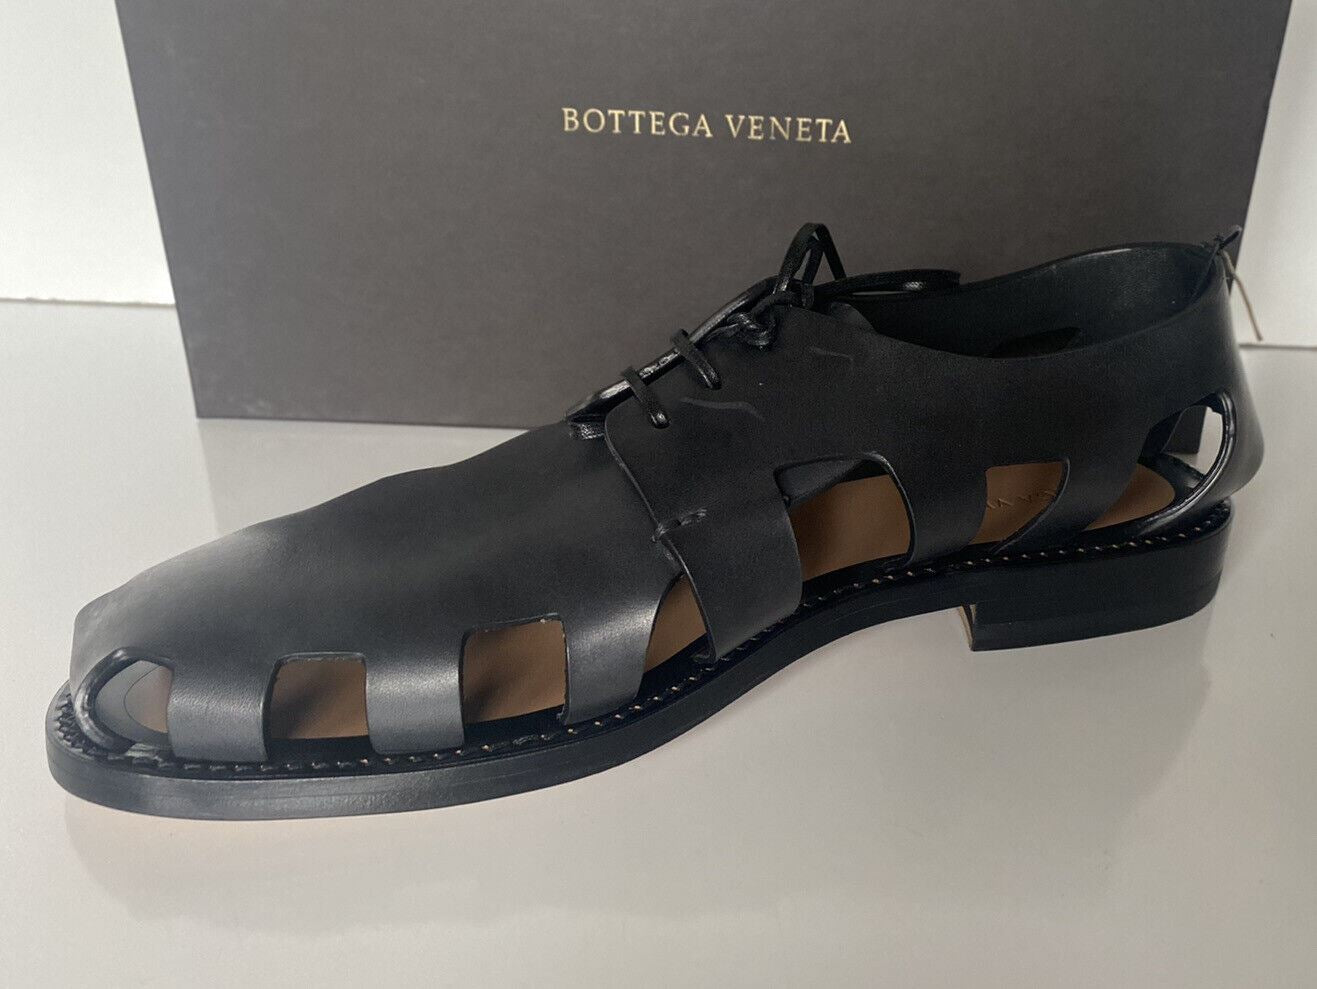 Мужские кожаные туфли дерби Bottega Veneta за 890 долларов США с вырезами 9, США 574829 